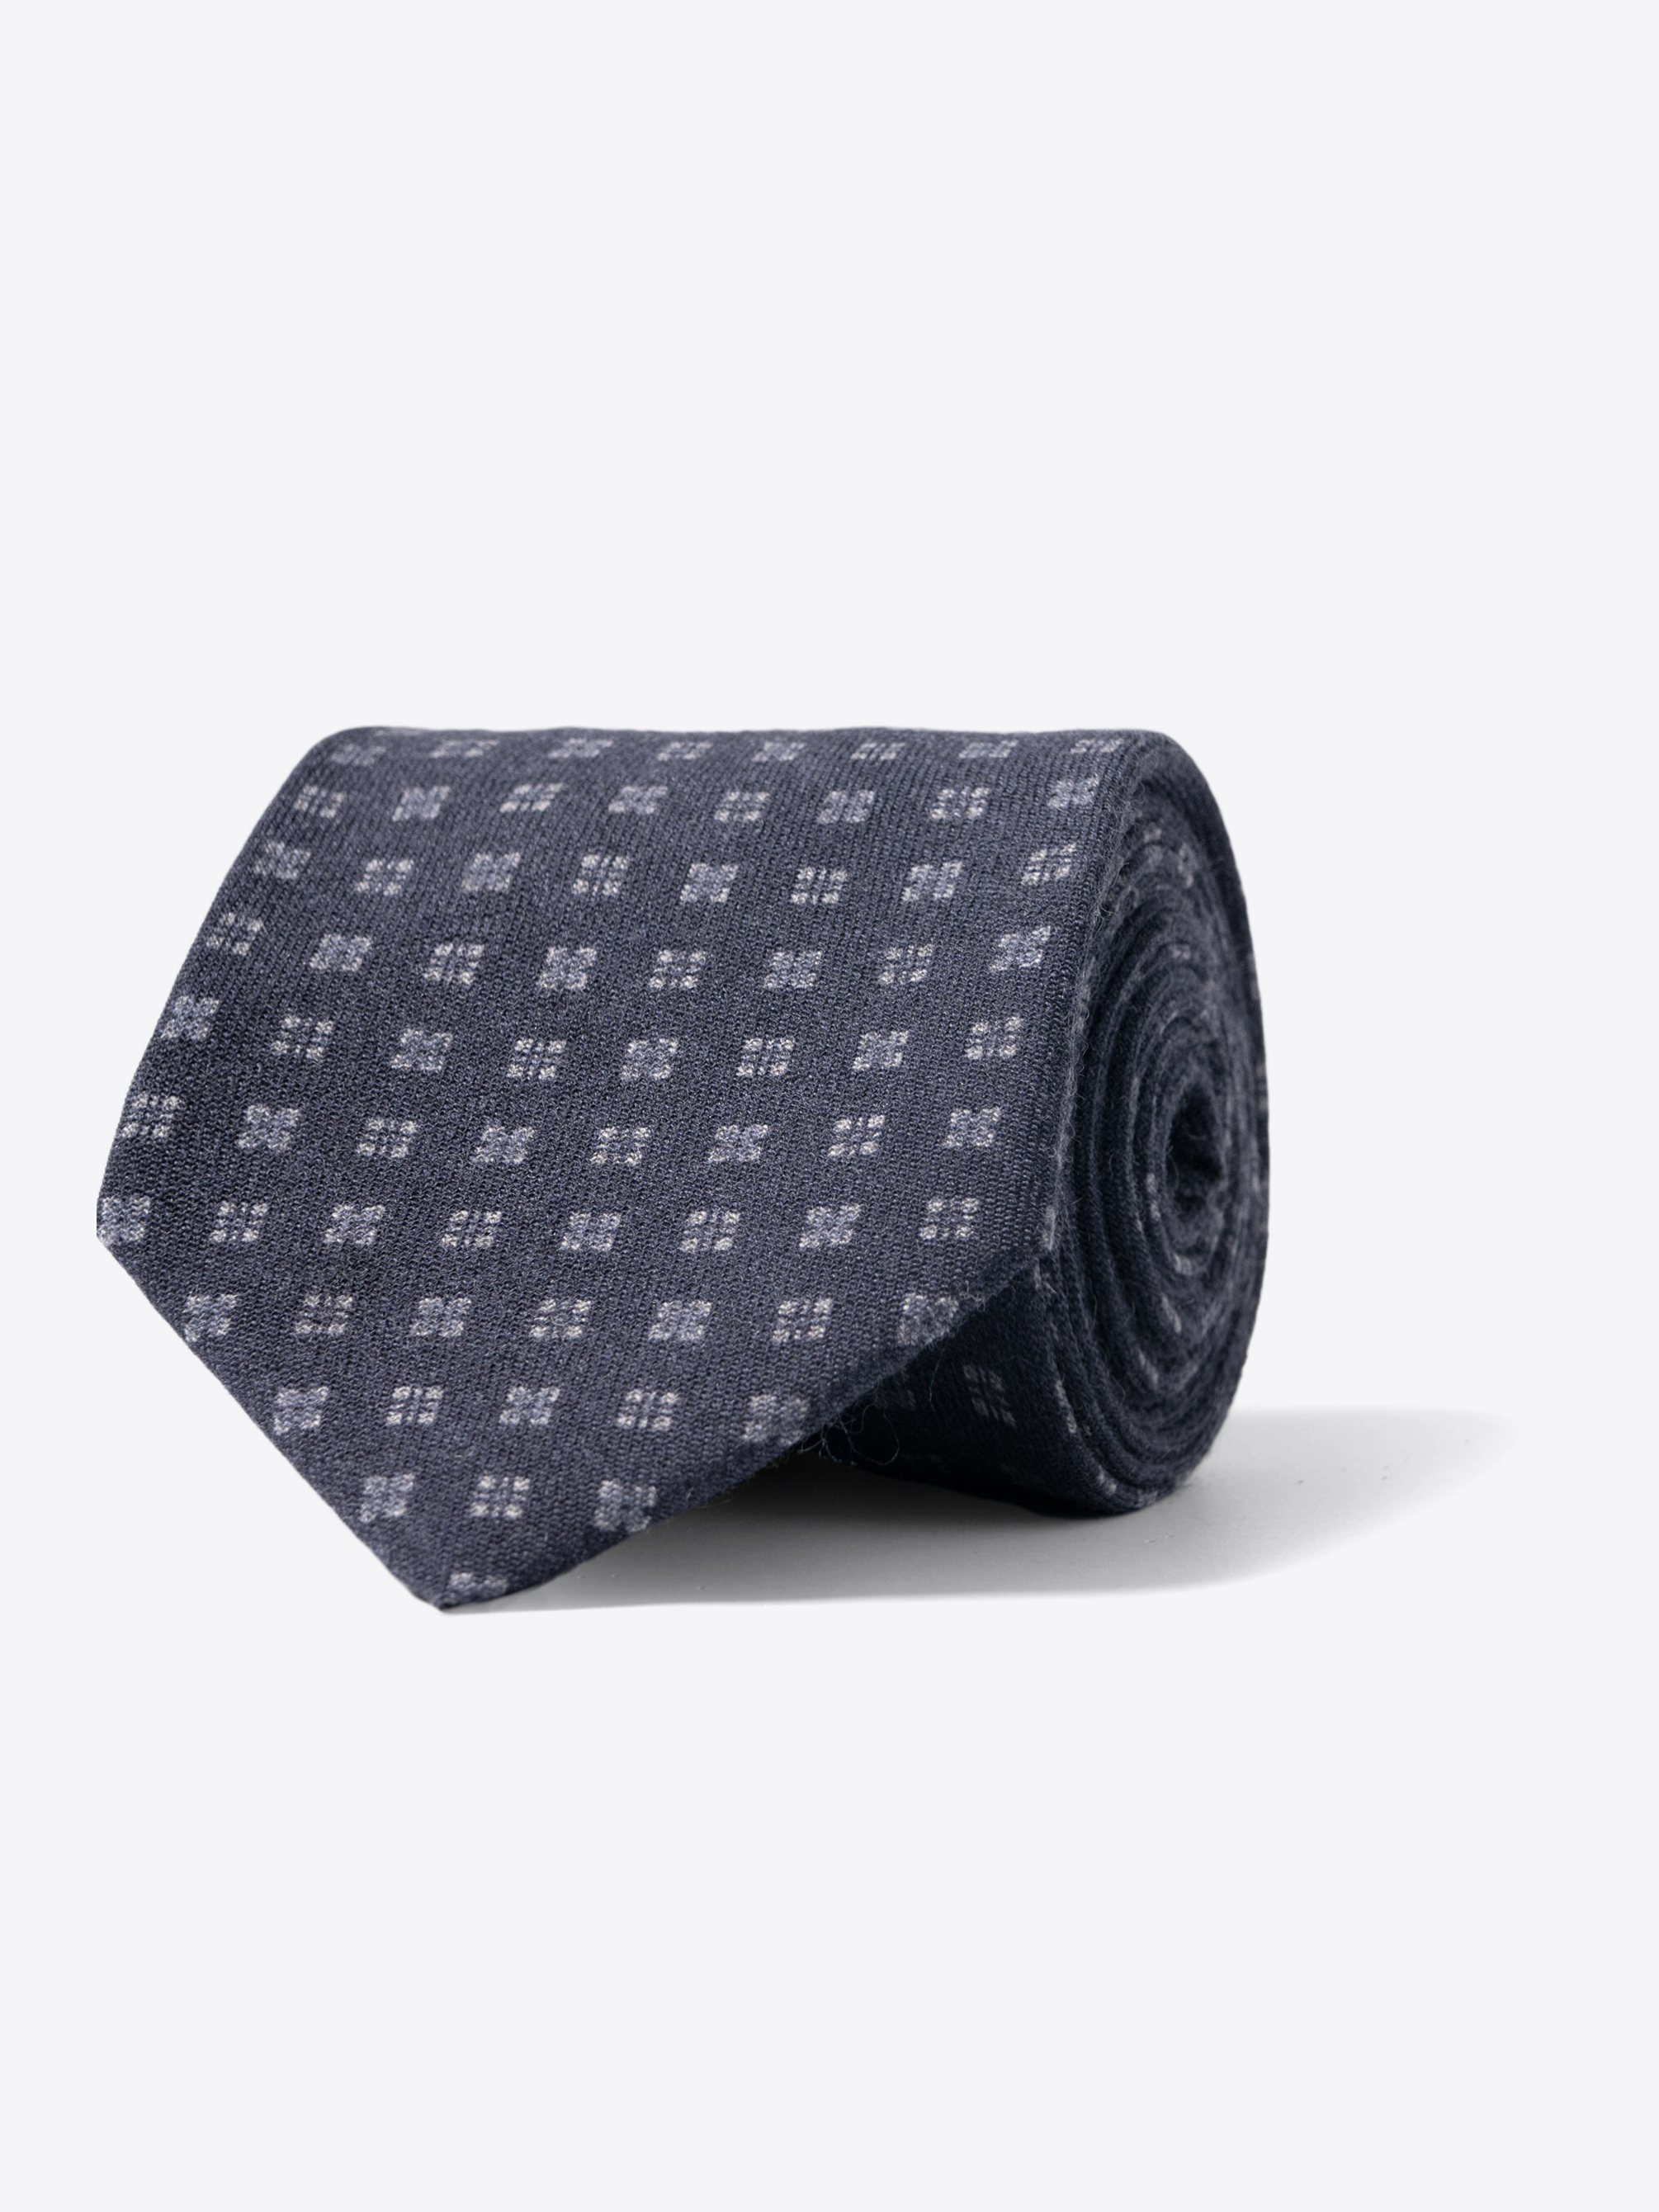 Zoom Image of Navy and Grey Printed Wool Tie